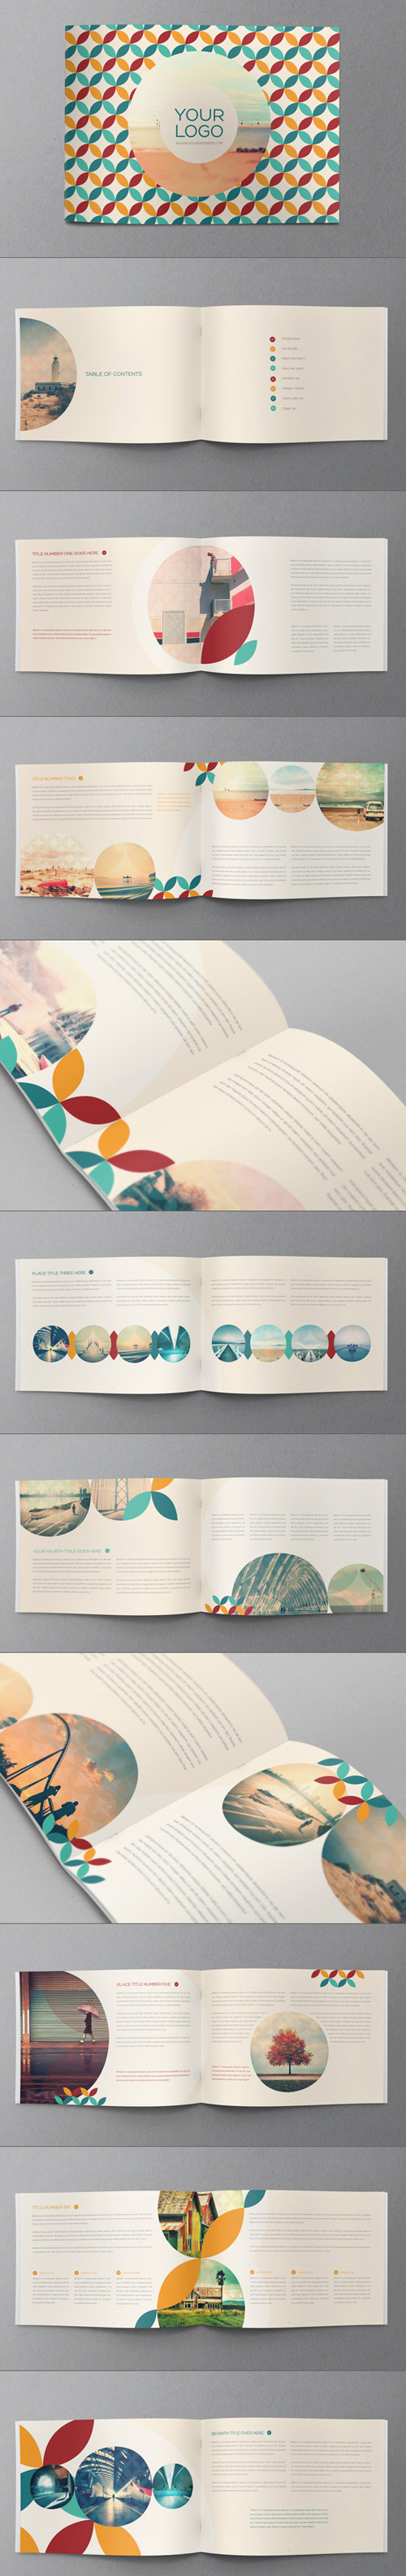 15个创意企业画册设计模板